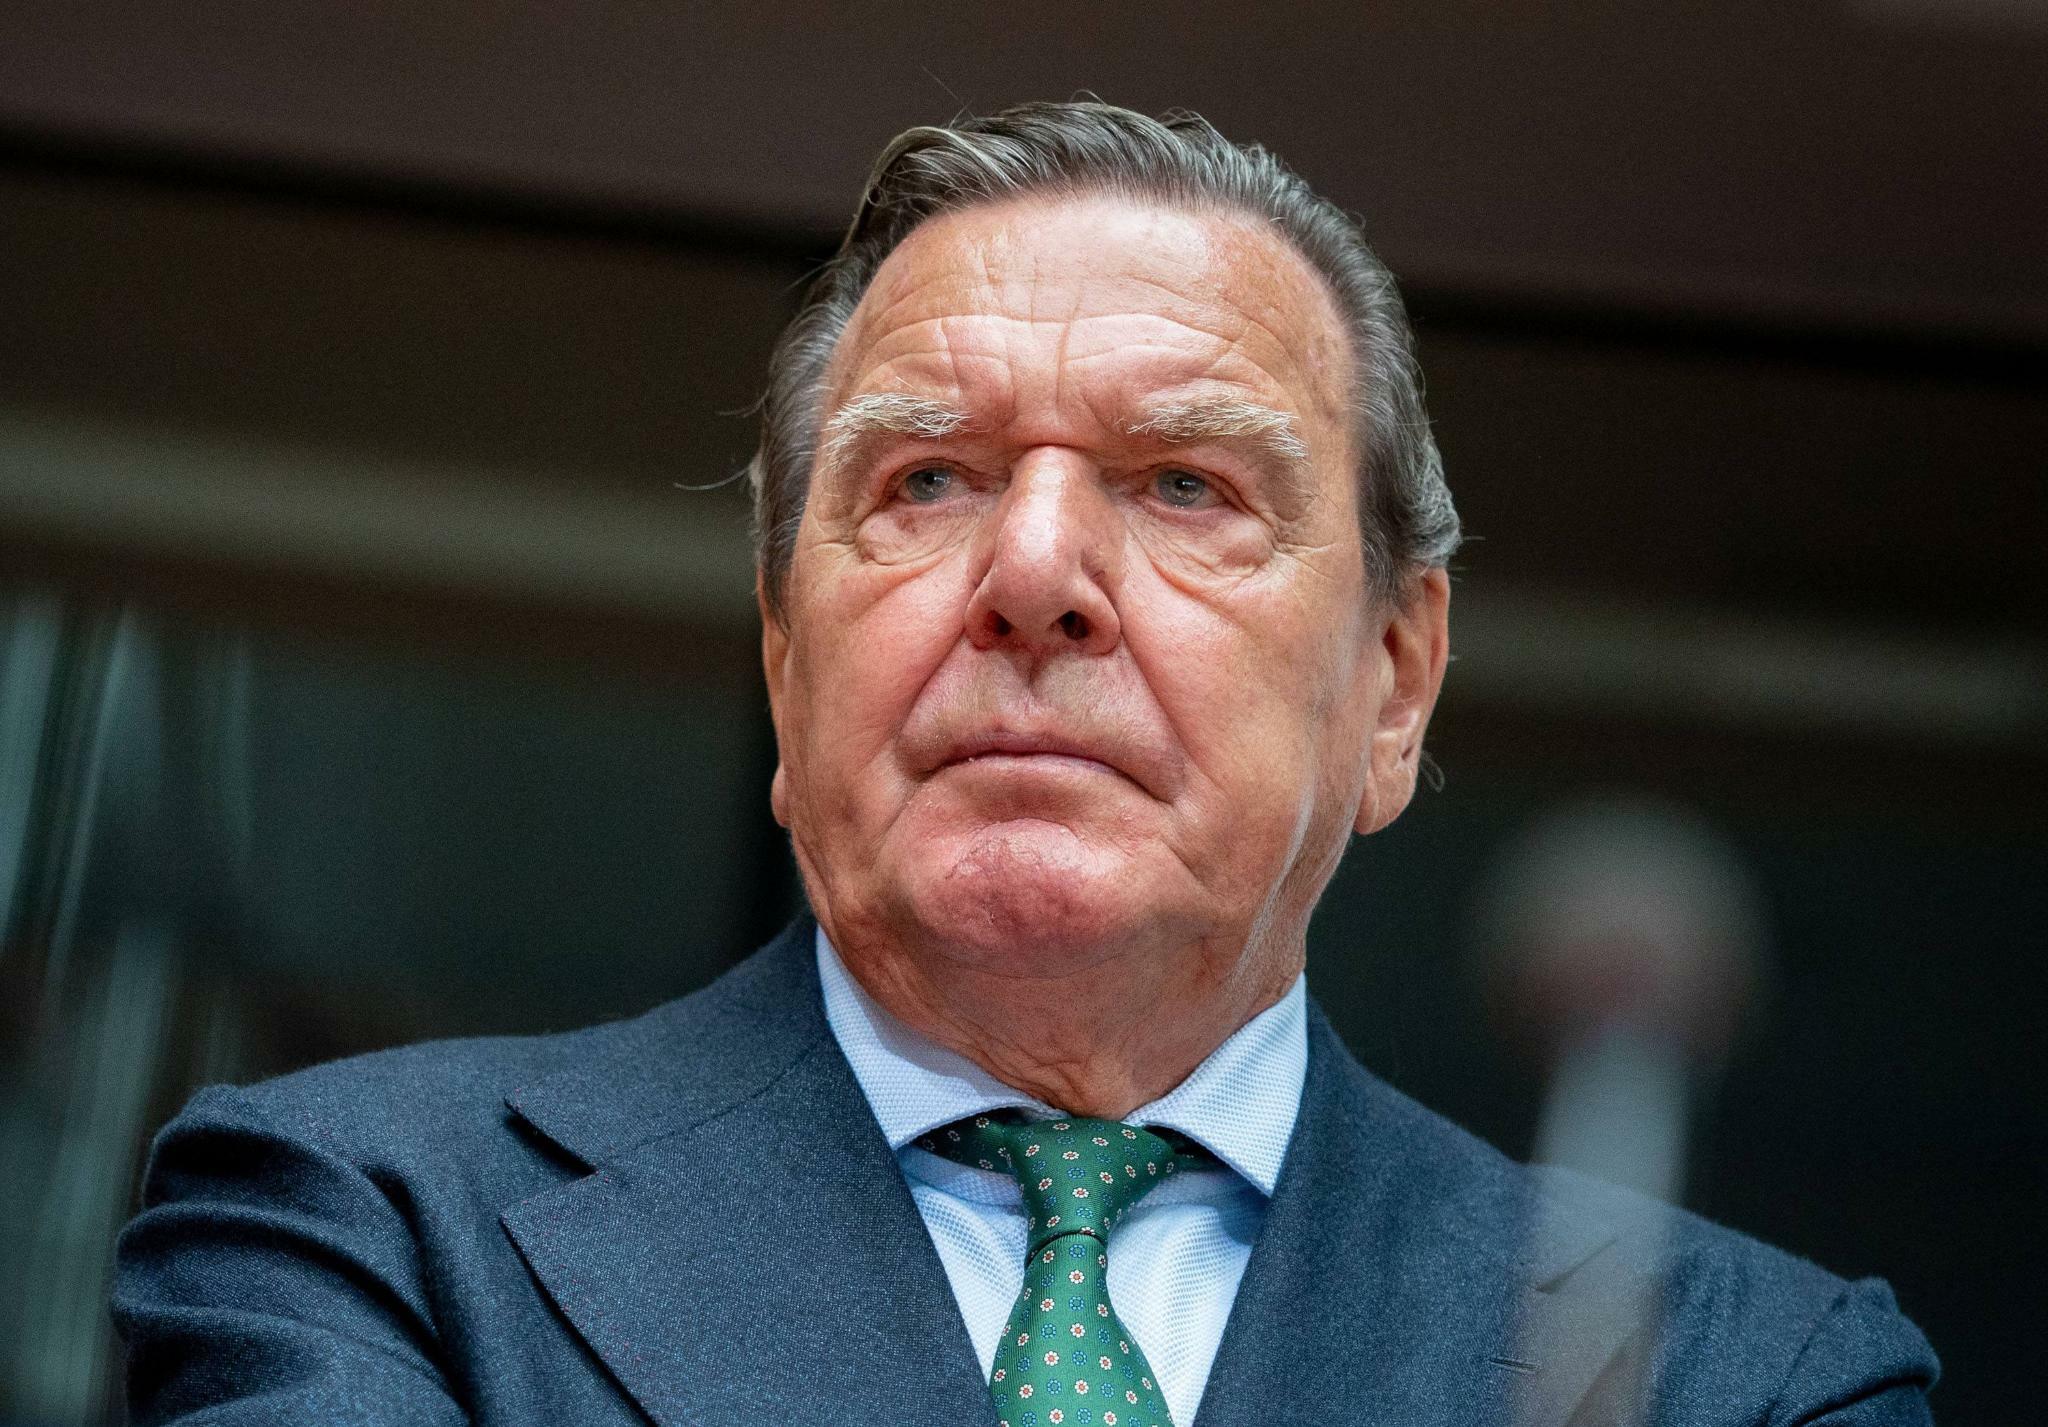 Jetzt feiert Schröder mit Erdogan! Gas-Gerd sorgt für neue Schlagzeilen - Schröder bei Amtseinführung